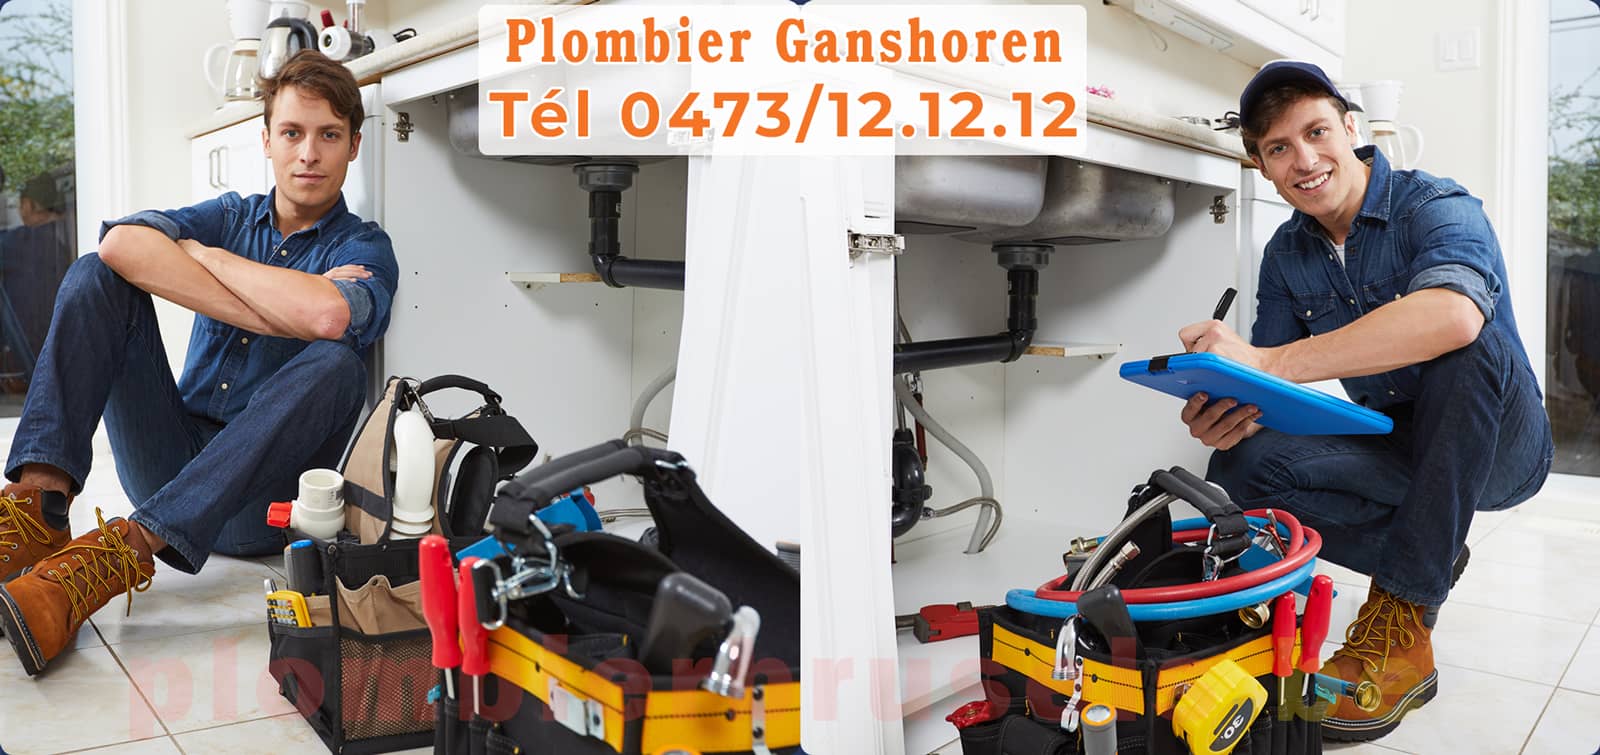 Plombier Ganshoren service de Plomberie tél 0473/12.12.12